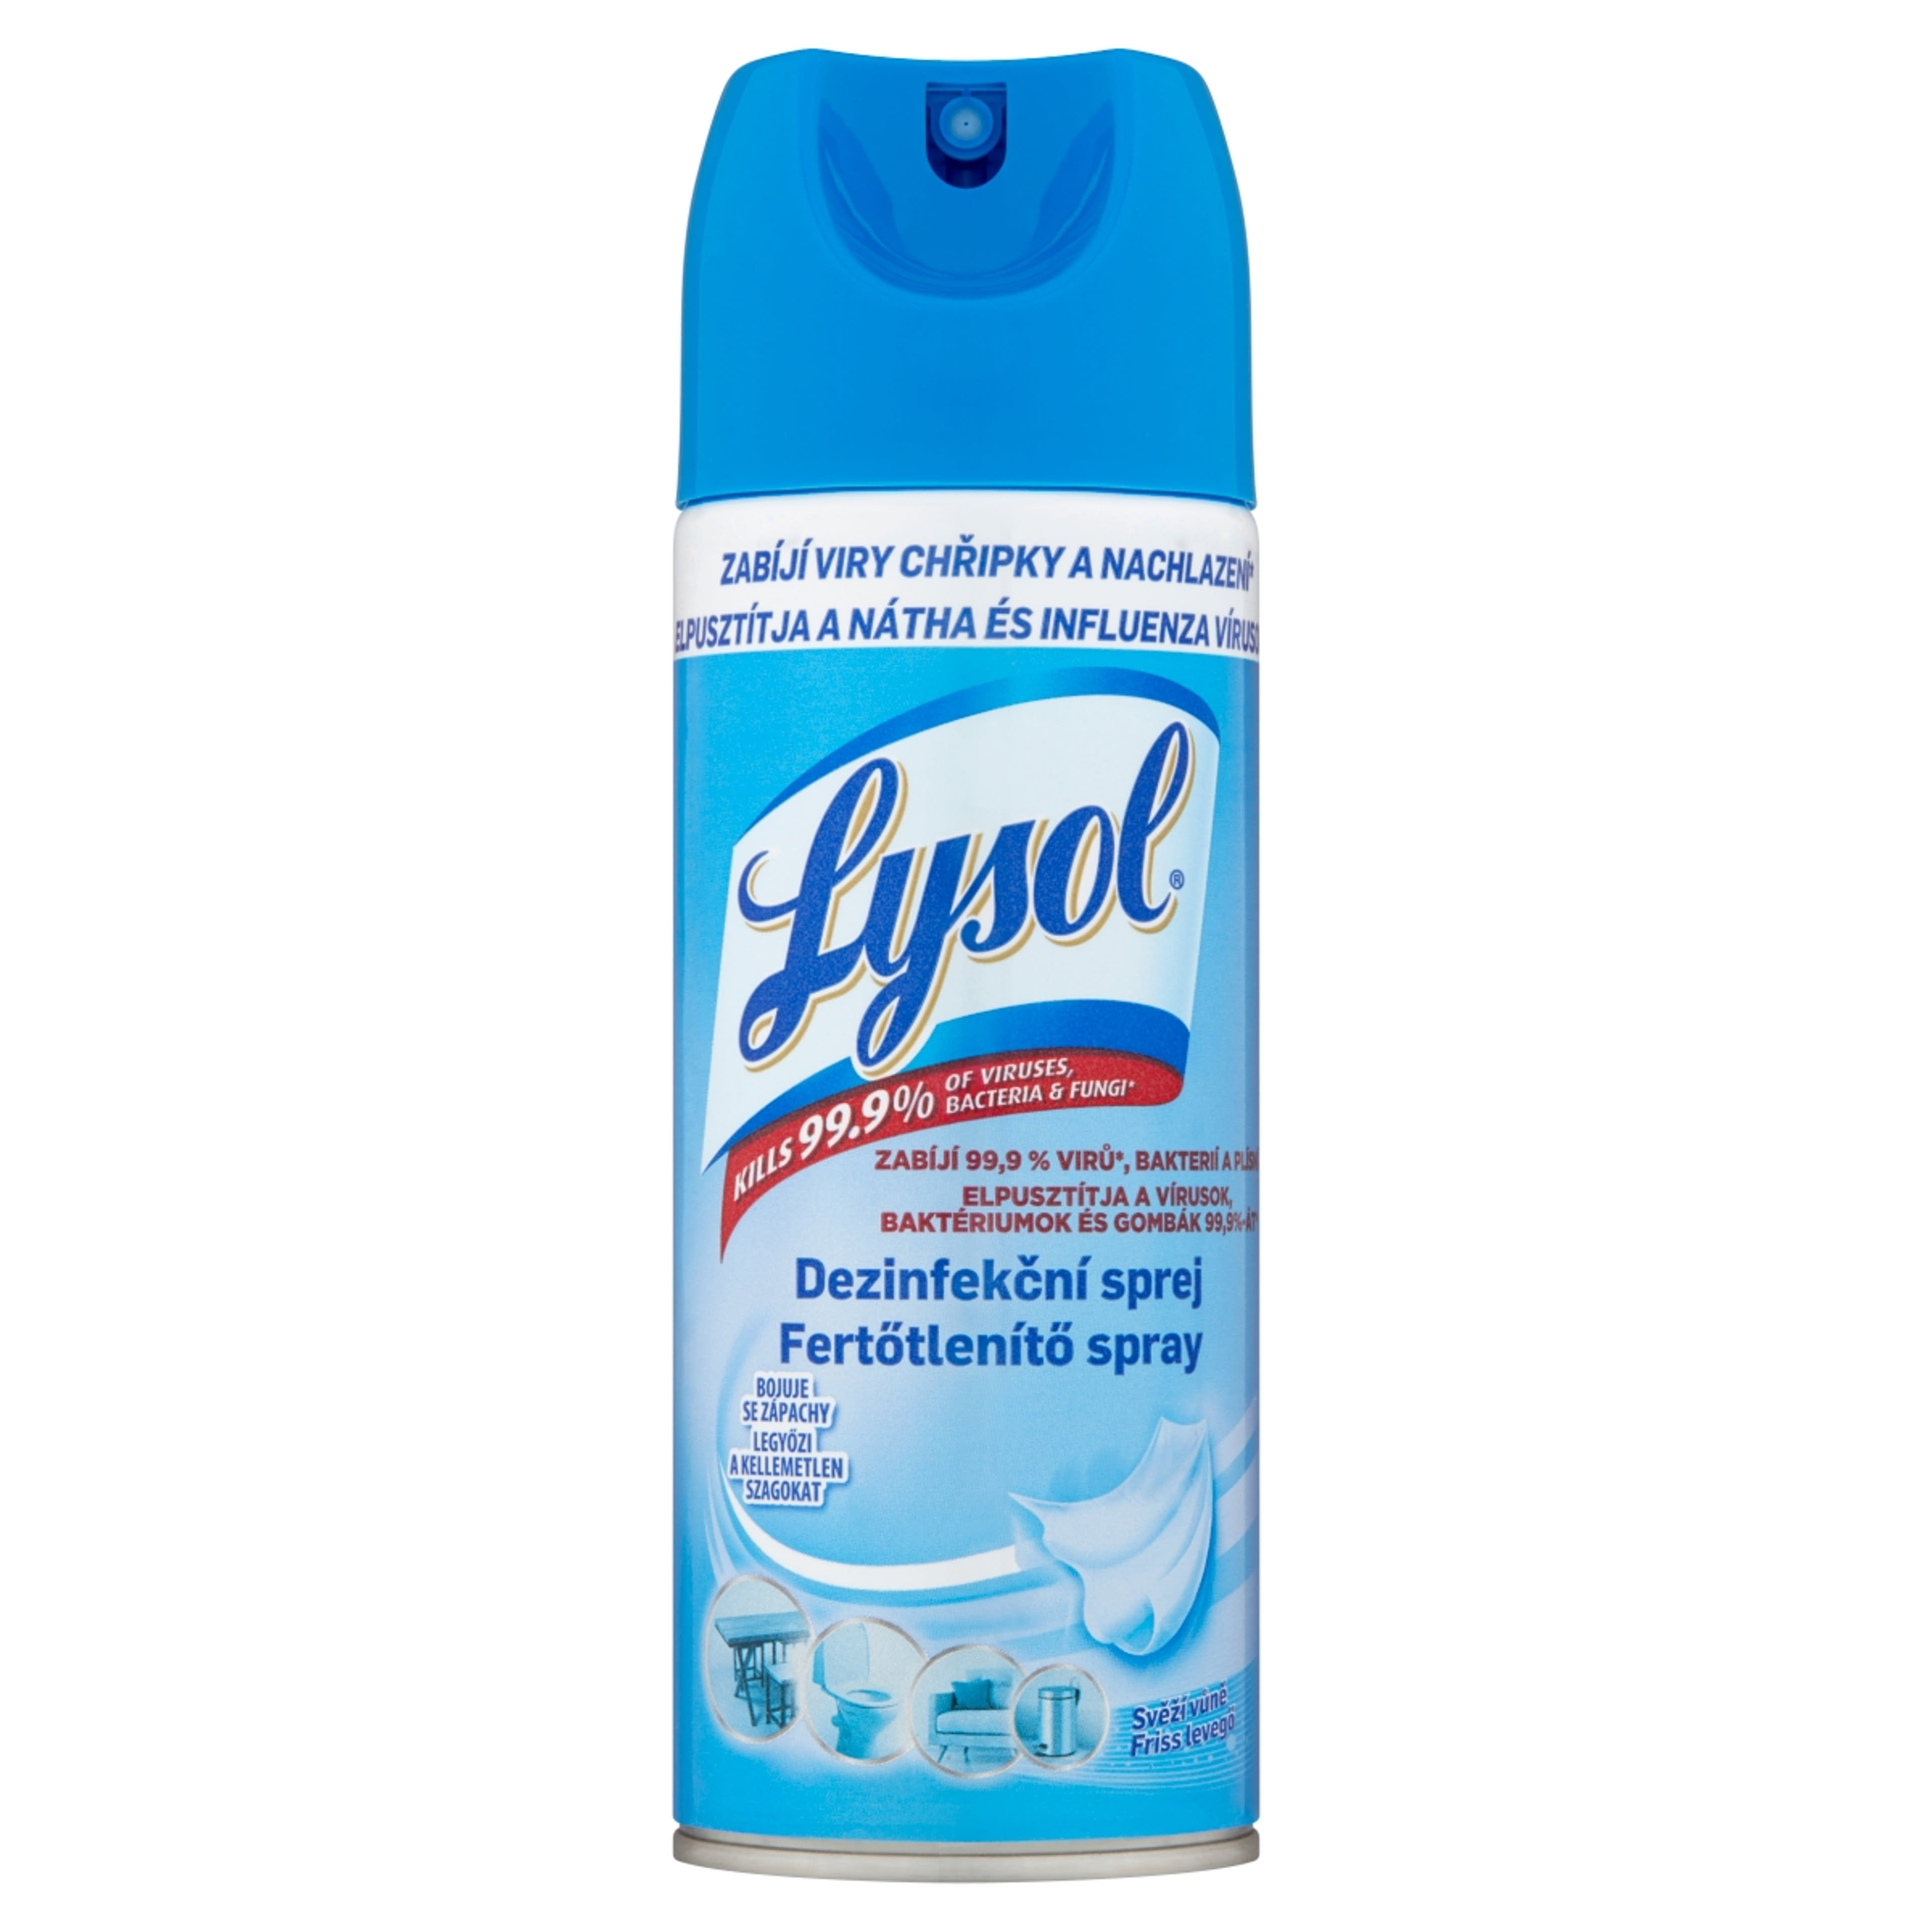 Lysol fertőtlenítő spray friss levegő - 400 ml